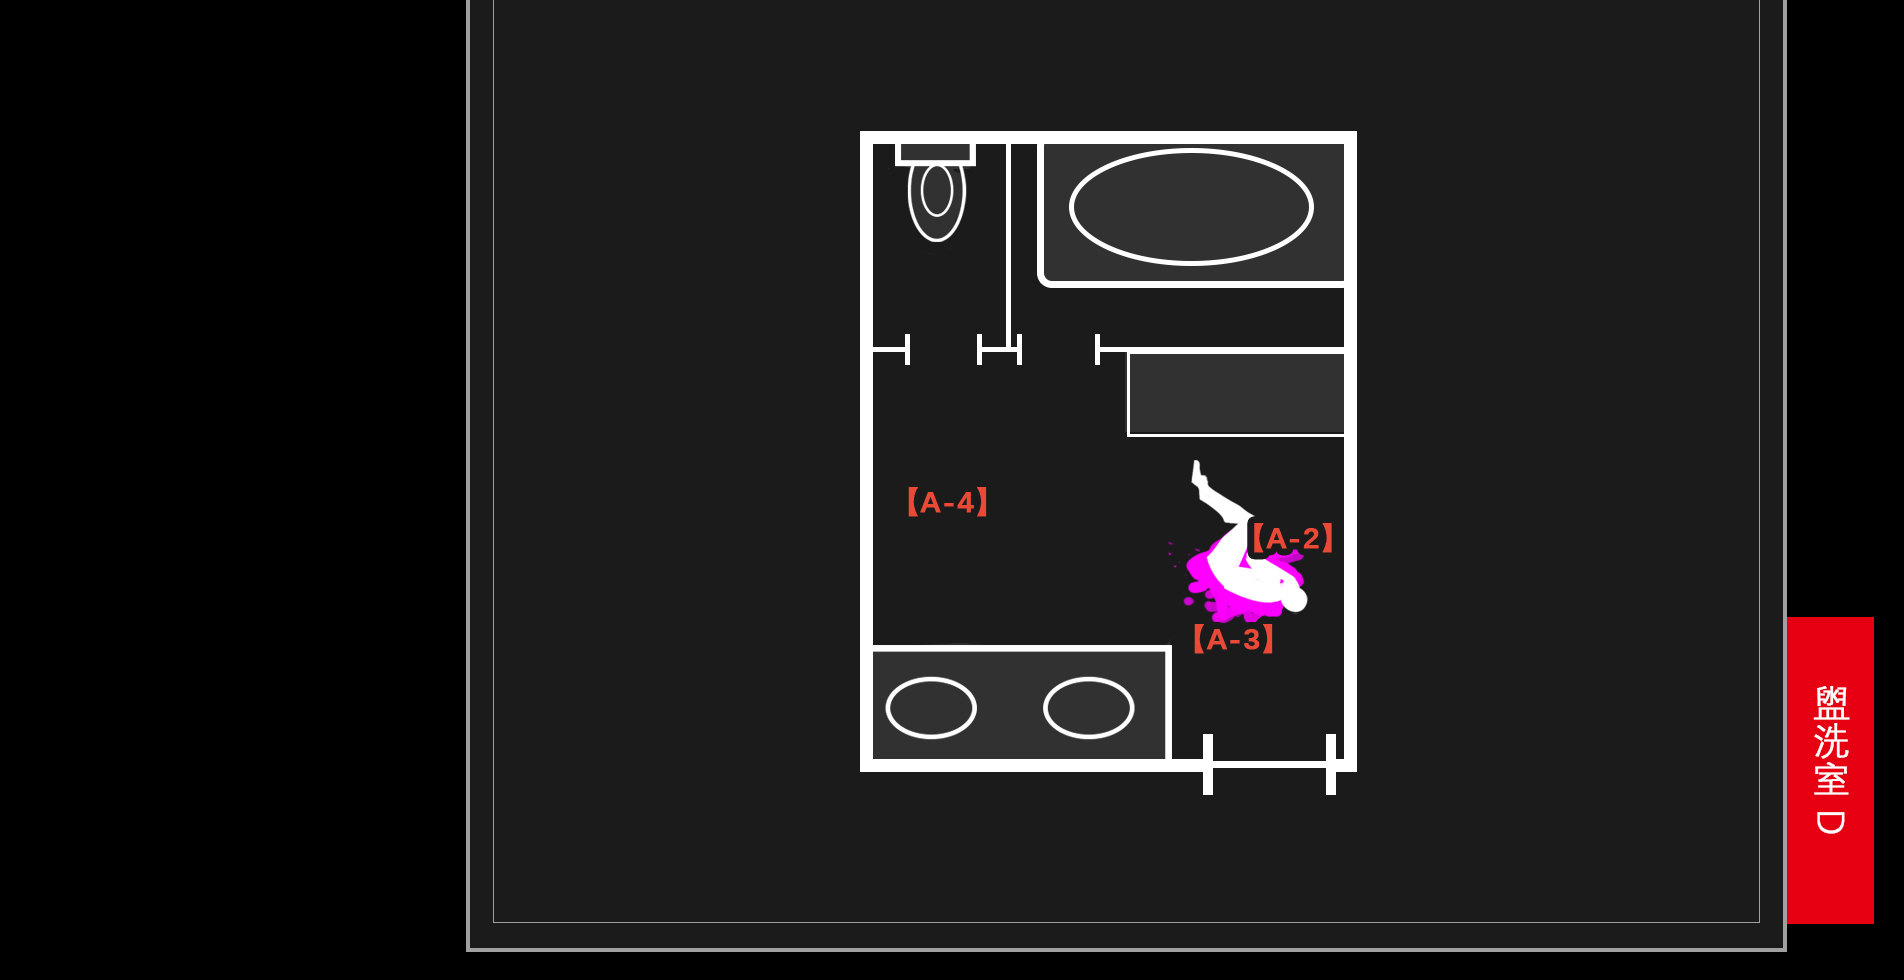 test floor_plan 3F_bathroom D_W numbers.jpg